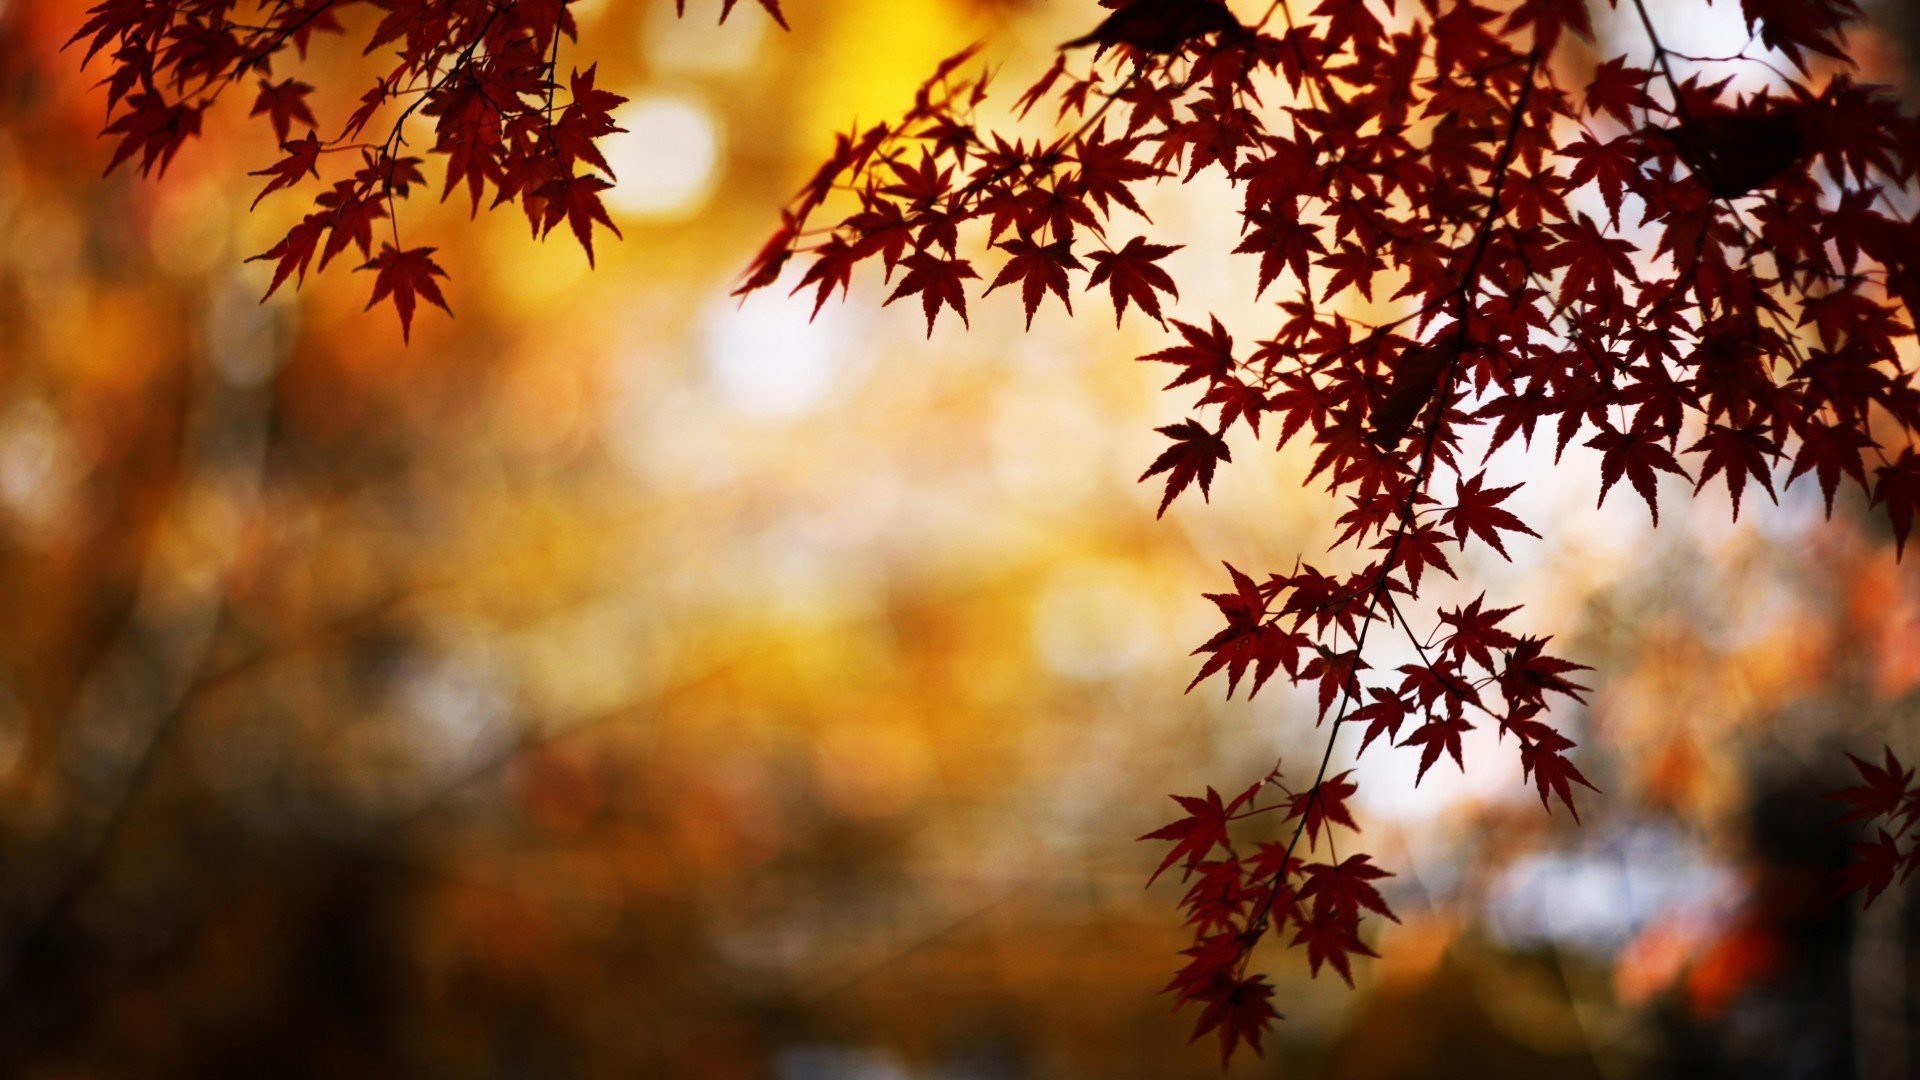 Бесплатное фото Осенние кленовые листья красного цвета